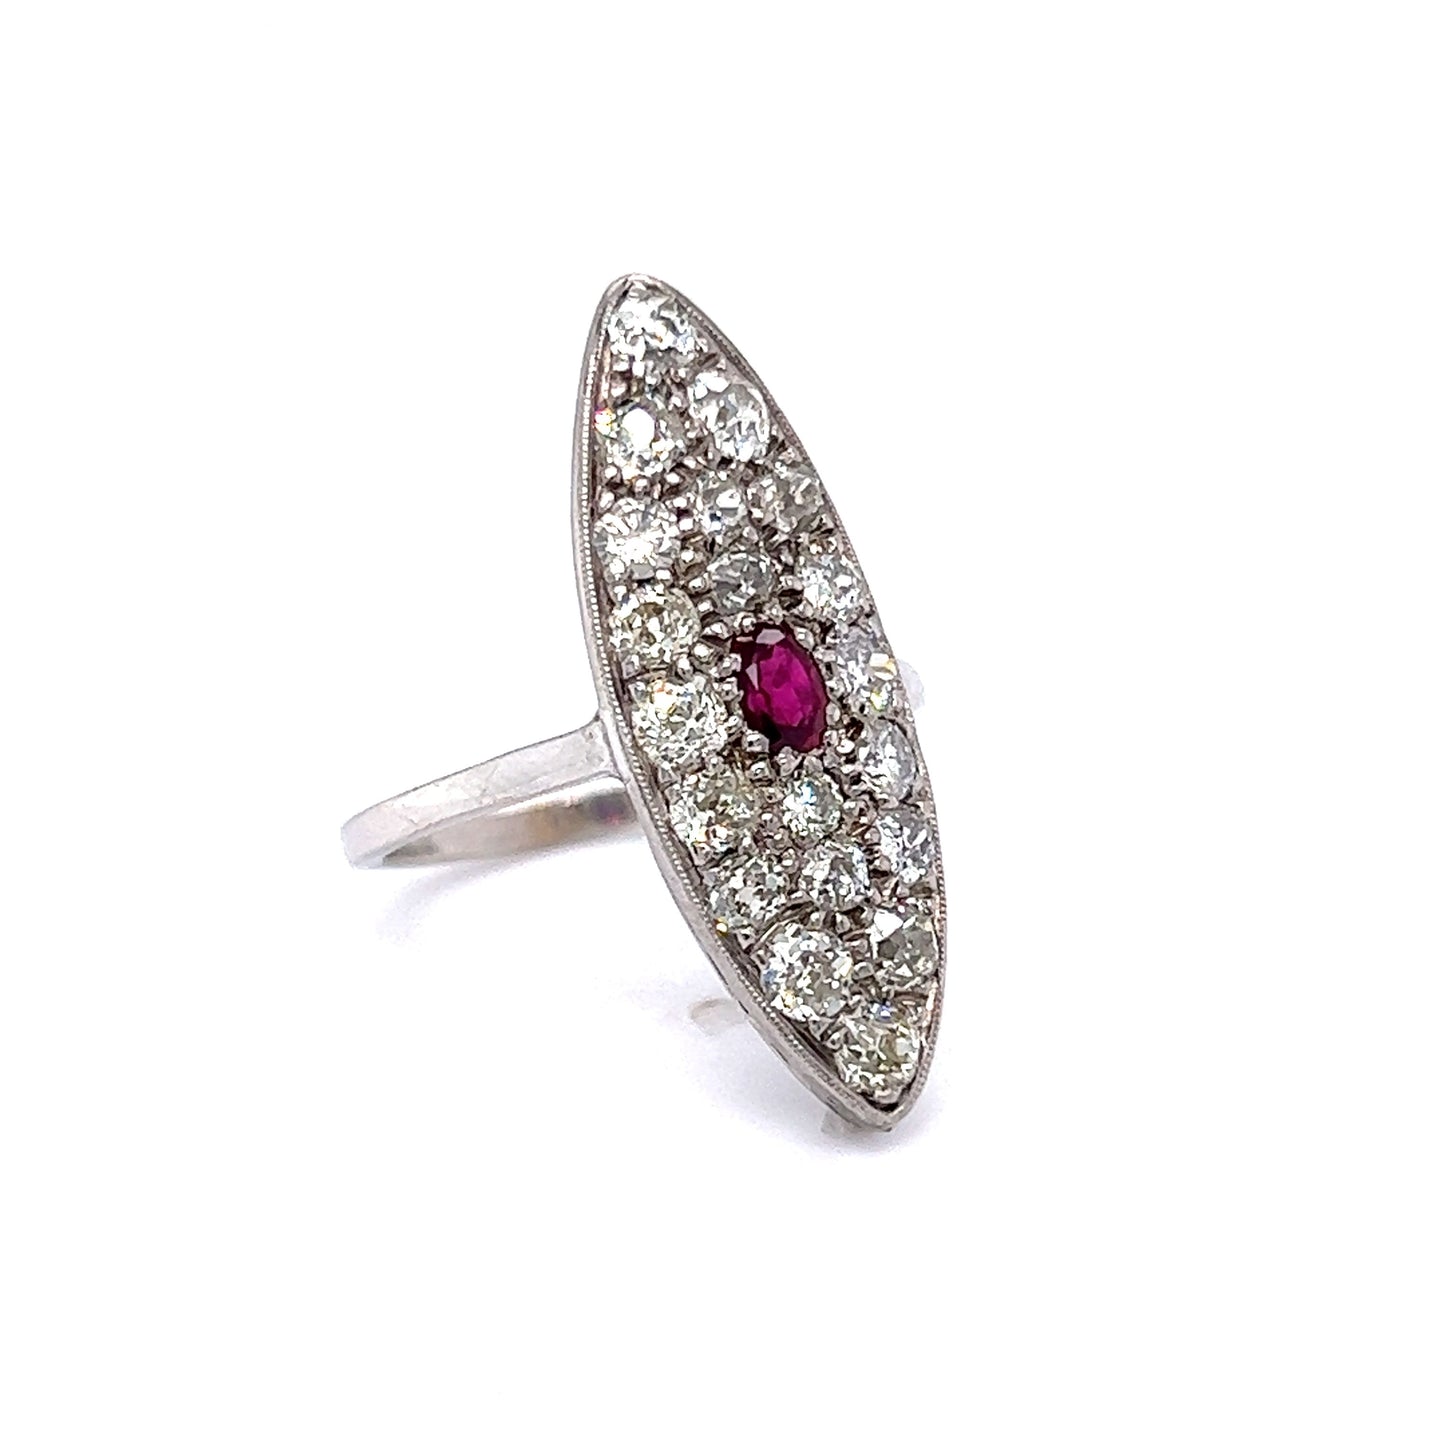 Edwardian Diamond w/ Ruby Navette Ring in 14K